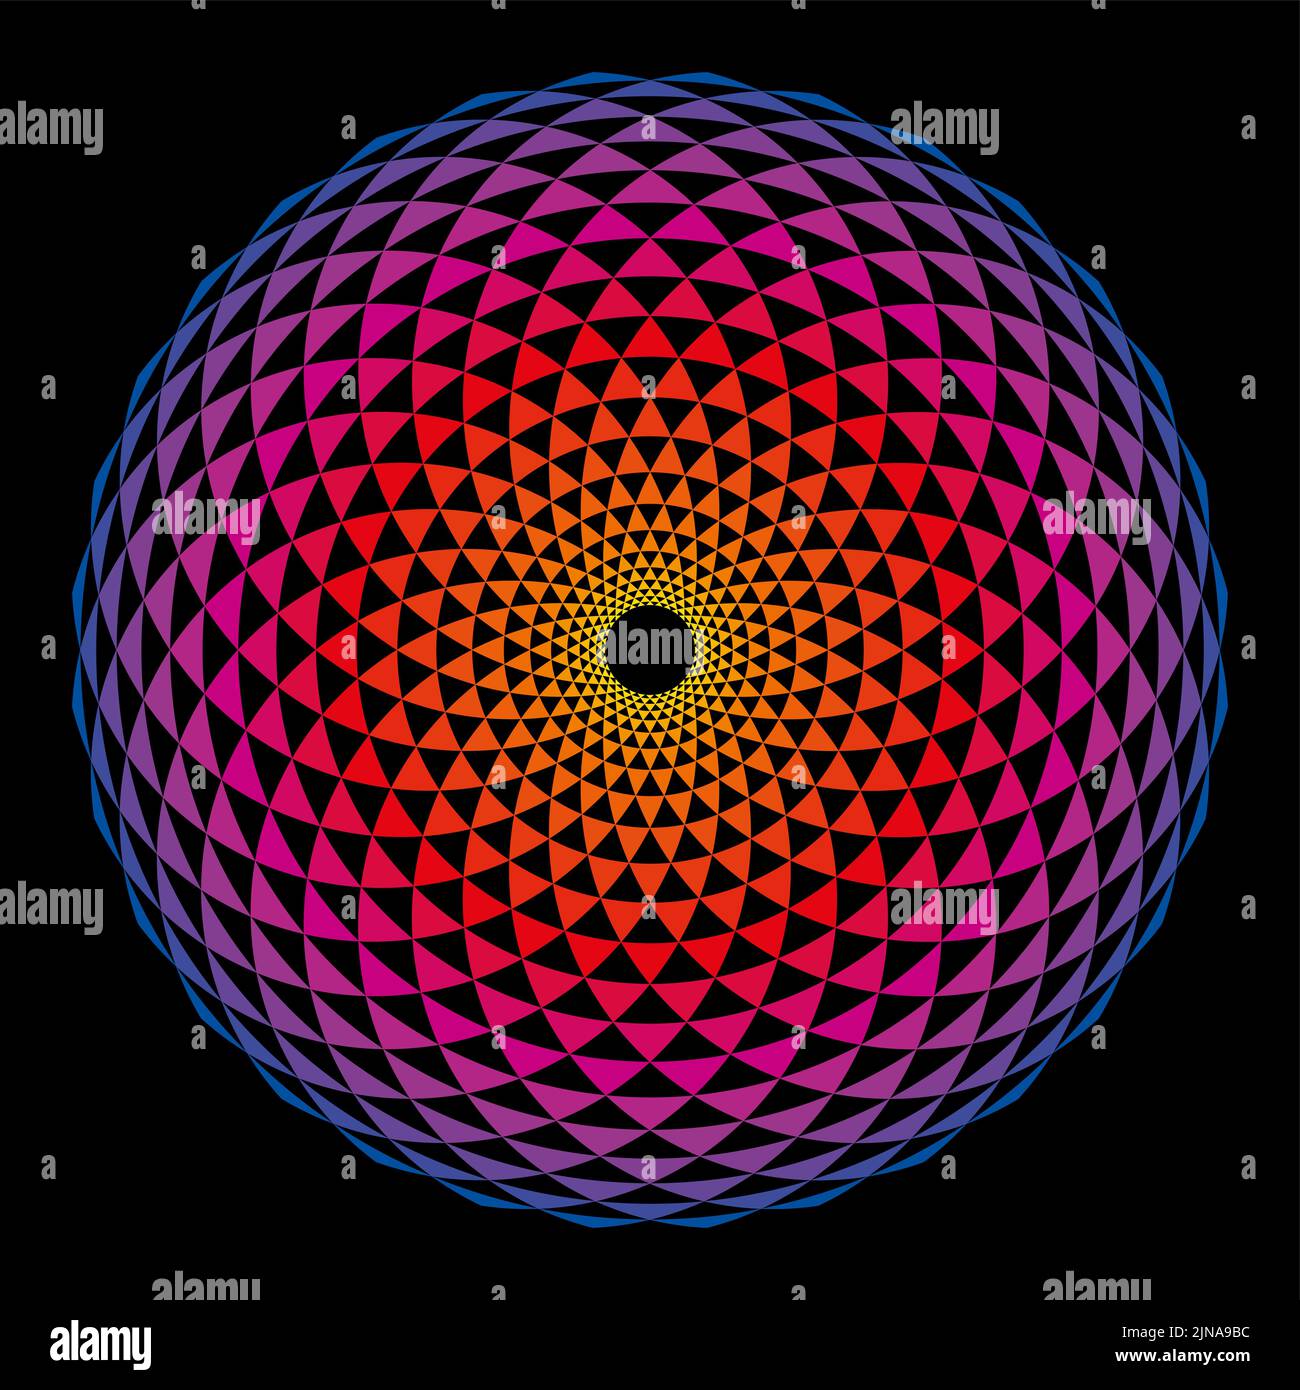 Colorido diseño Fibonacci en forma de esfera. Arcos organizados en forma de espiral, cruzados por círculos, creando triángulos de pliegue. Foto de stock